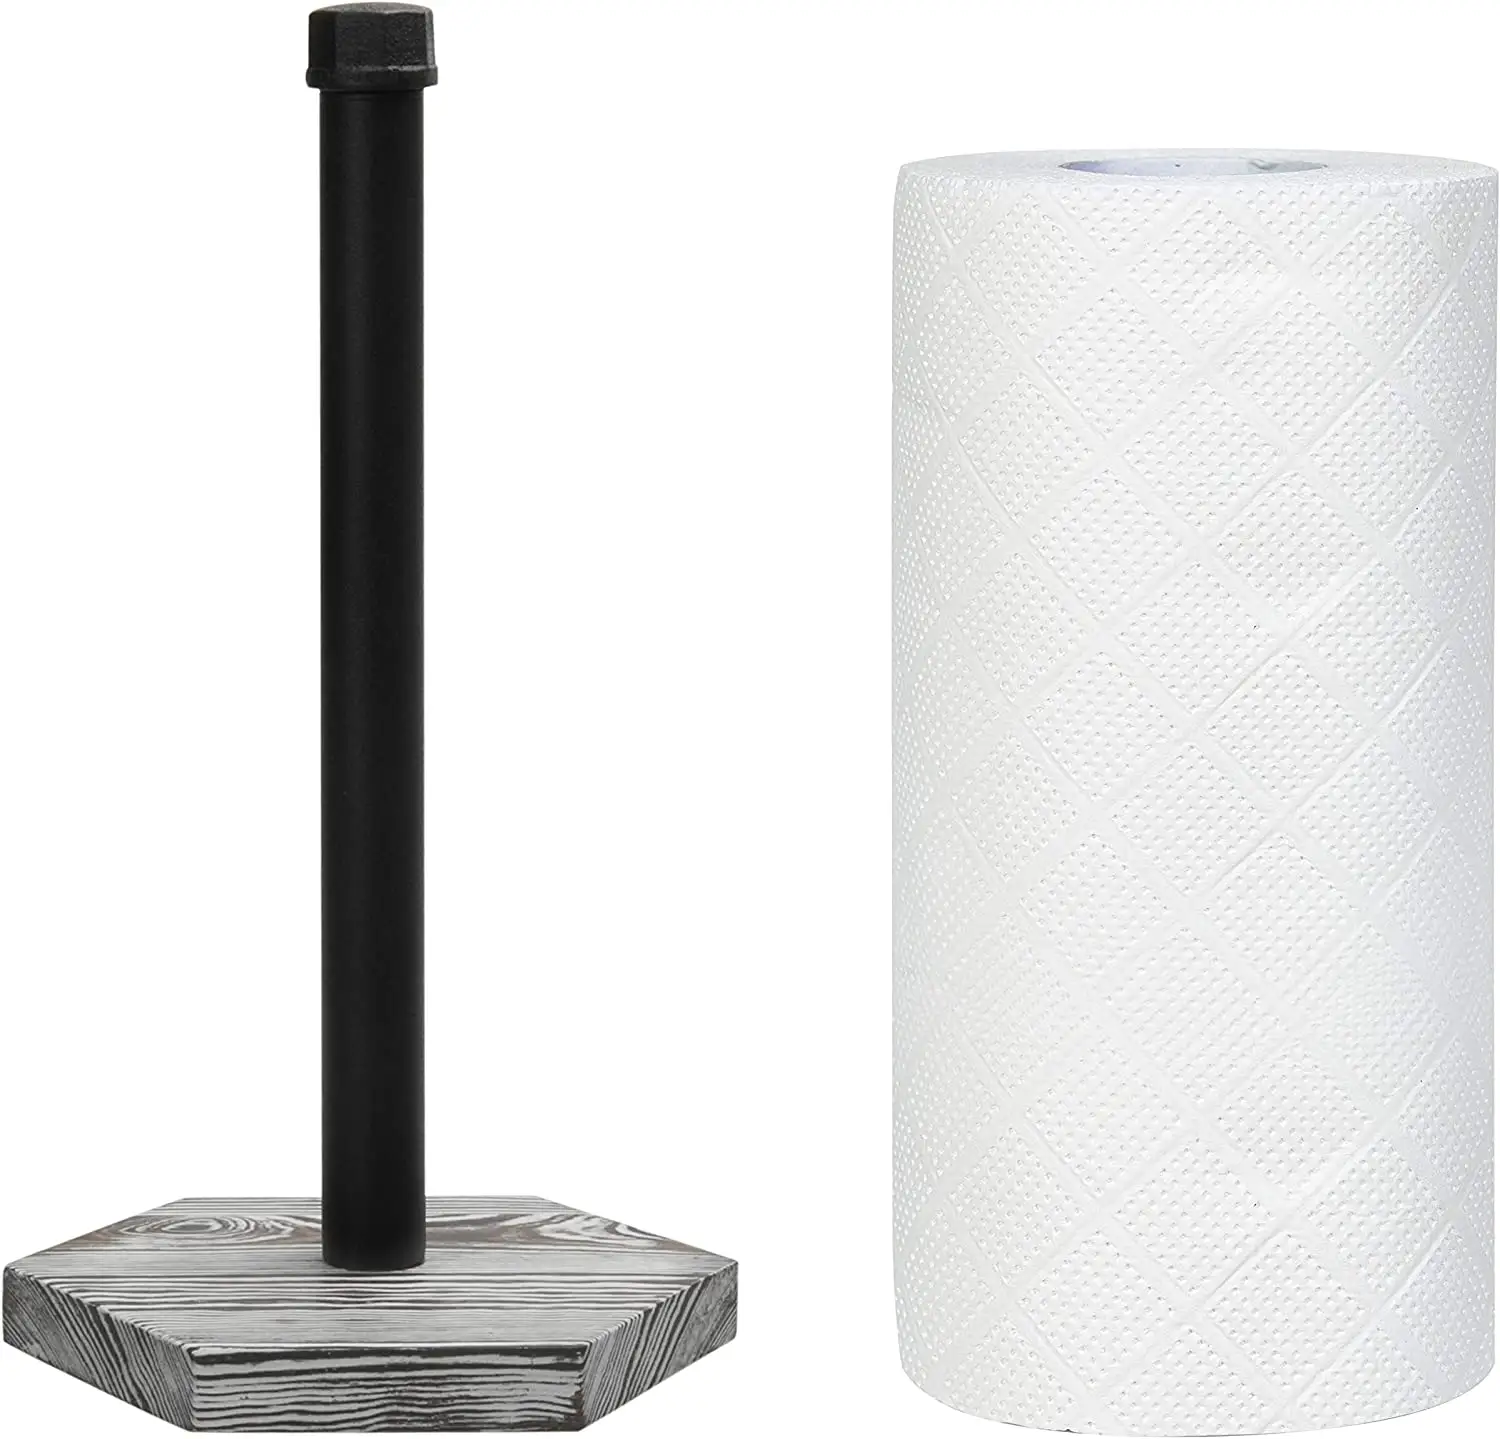 Porte-serviettes en papier industriel en métal noir avec Base en bois délavé gris, support distributeur de rouleaux d'essuie-tout